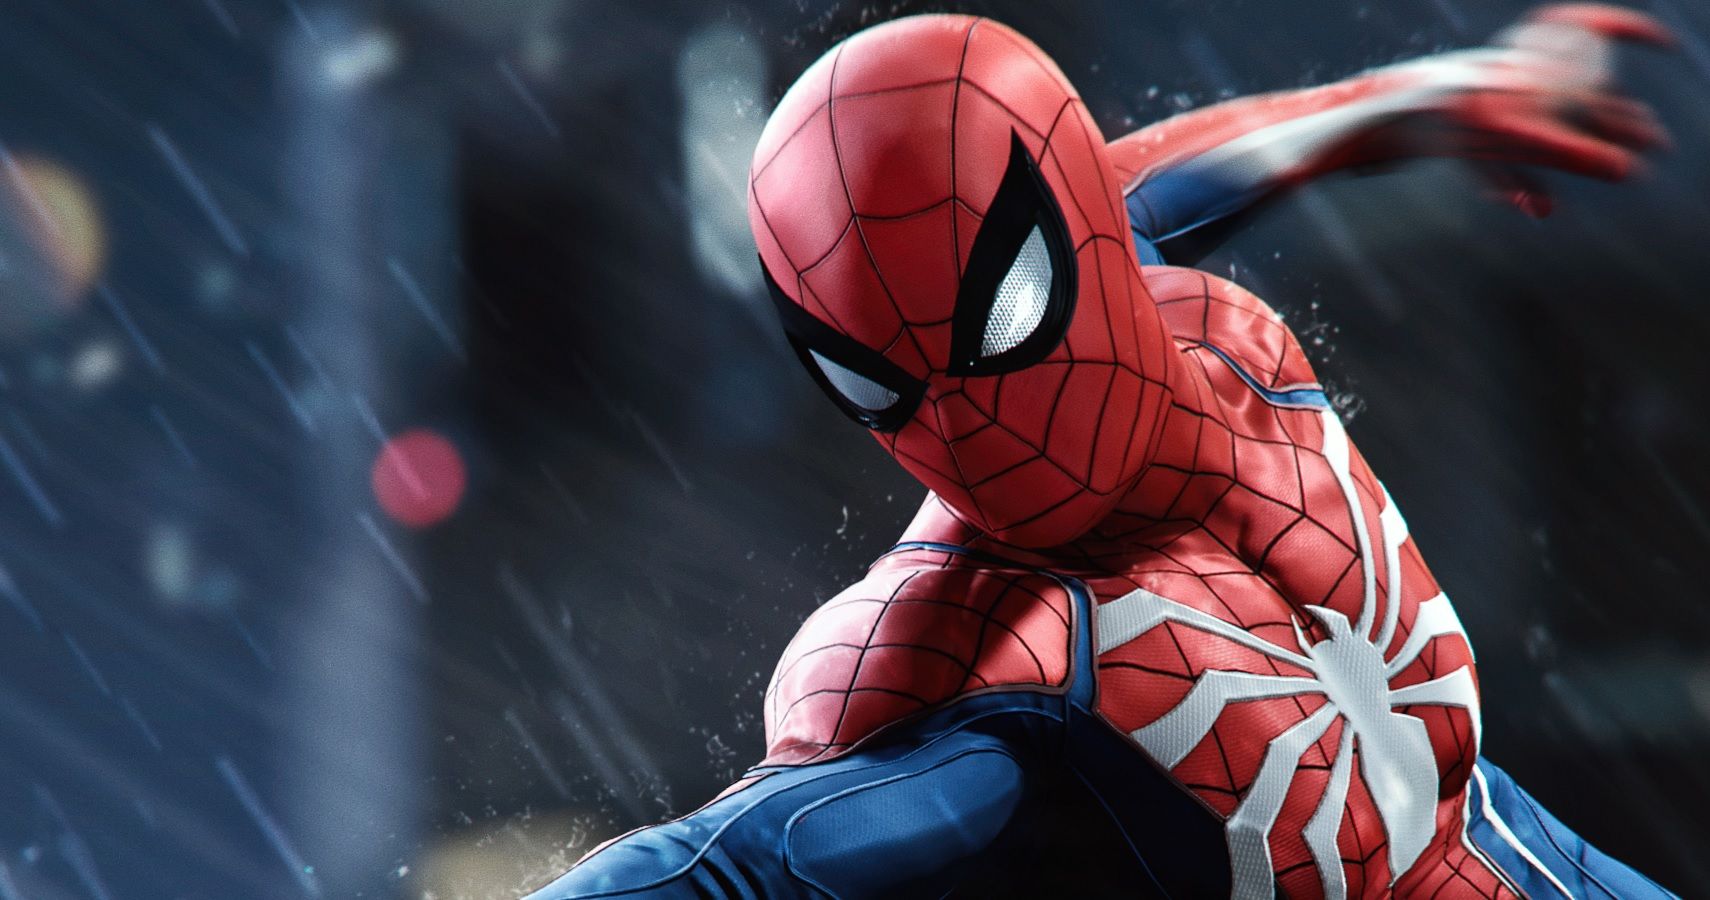 Spider-Man' PS4 Pro Bundle Unveiled, Voice Actors Announced